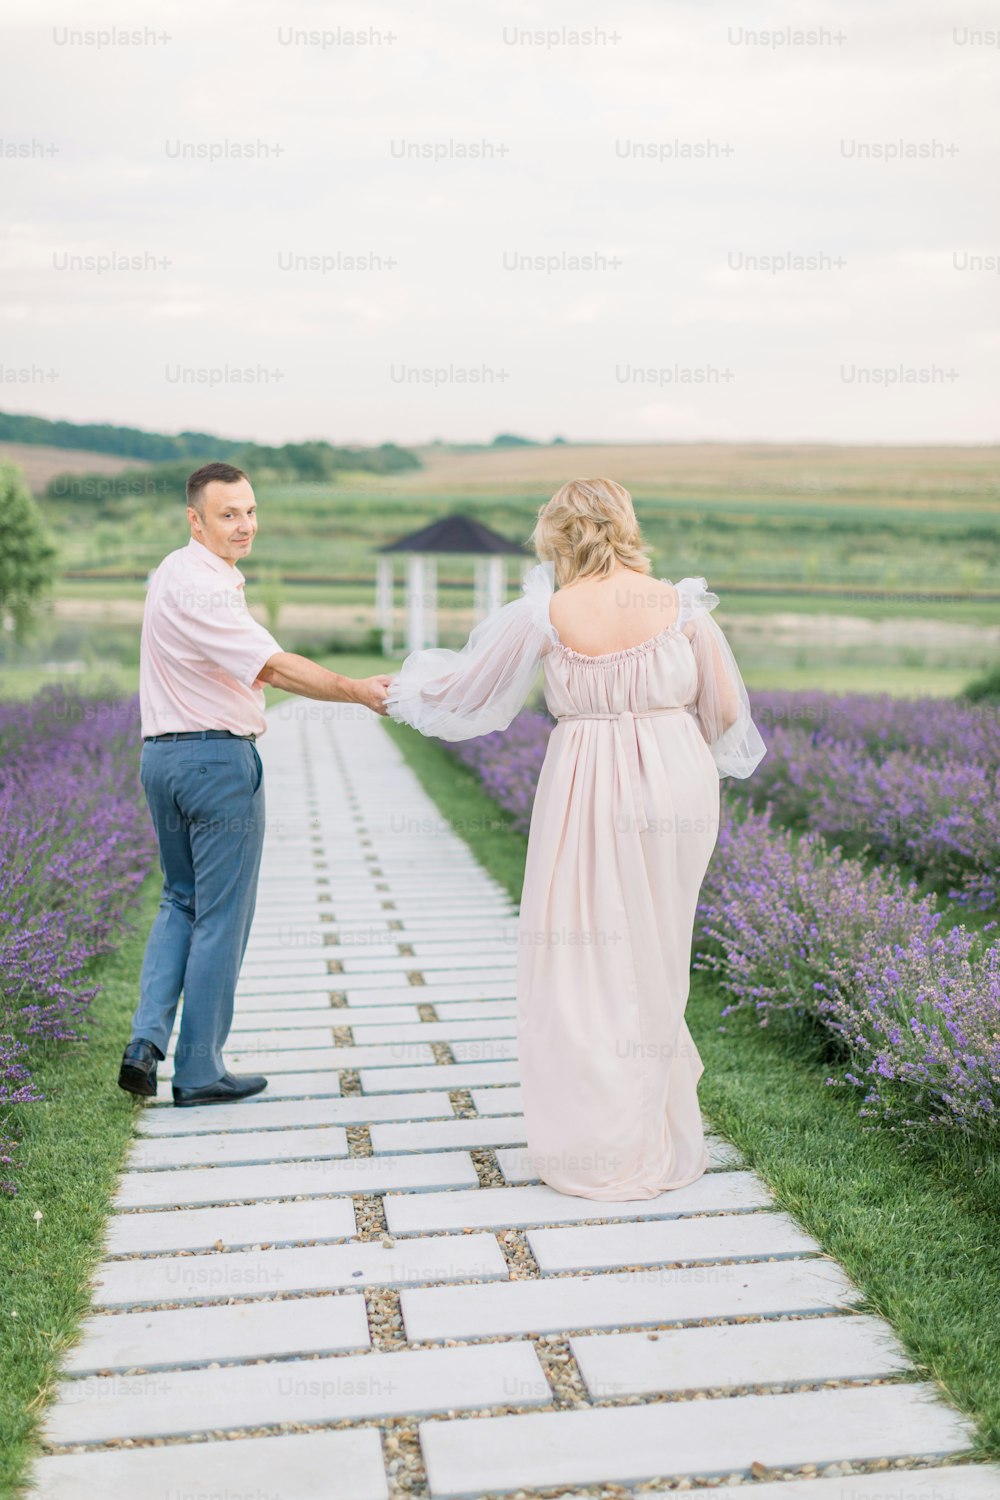 Toma al aire libre de una pareja madura romántica feliz enamorada caminando por el camino a través del campo de lavanda en flor, tomados de la mano y disfrutando de momentos juntos